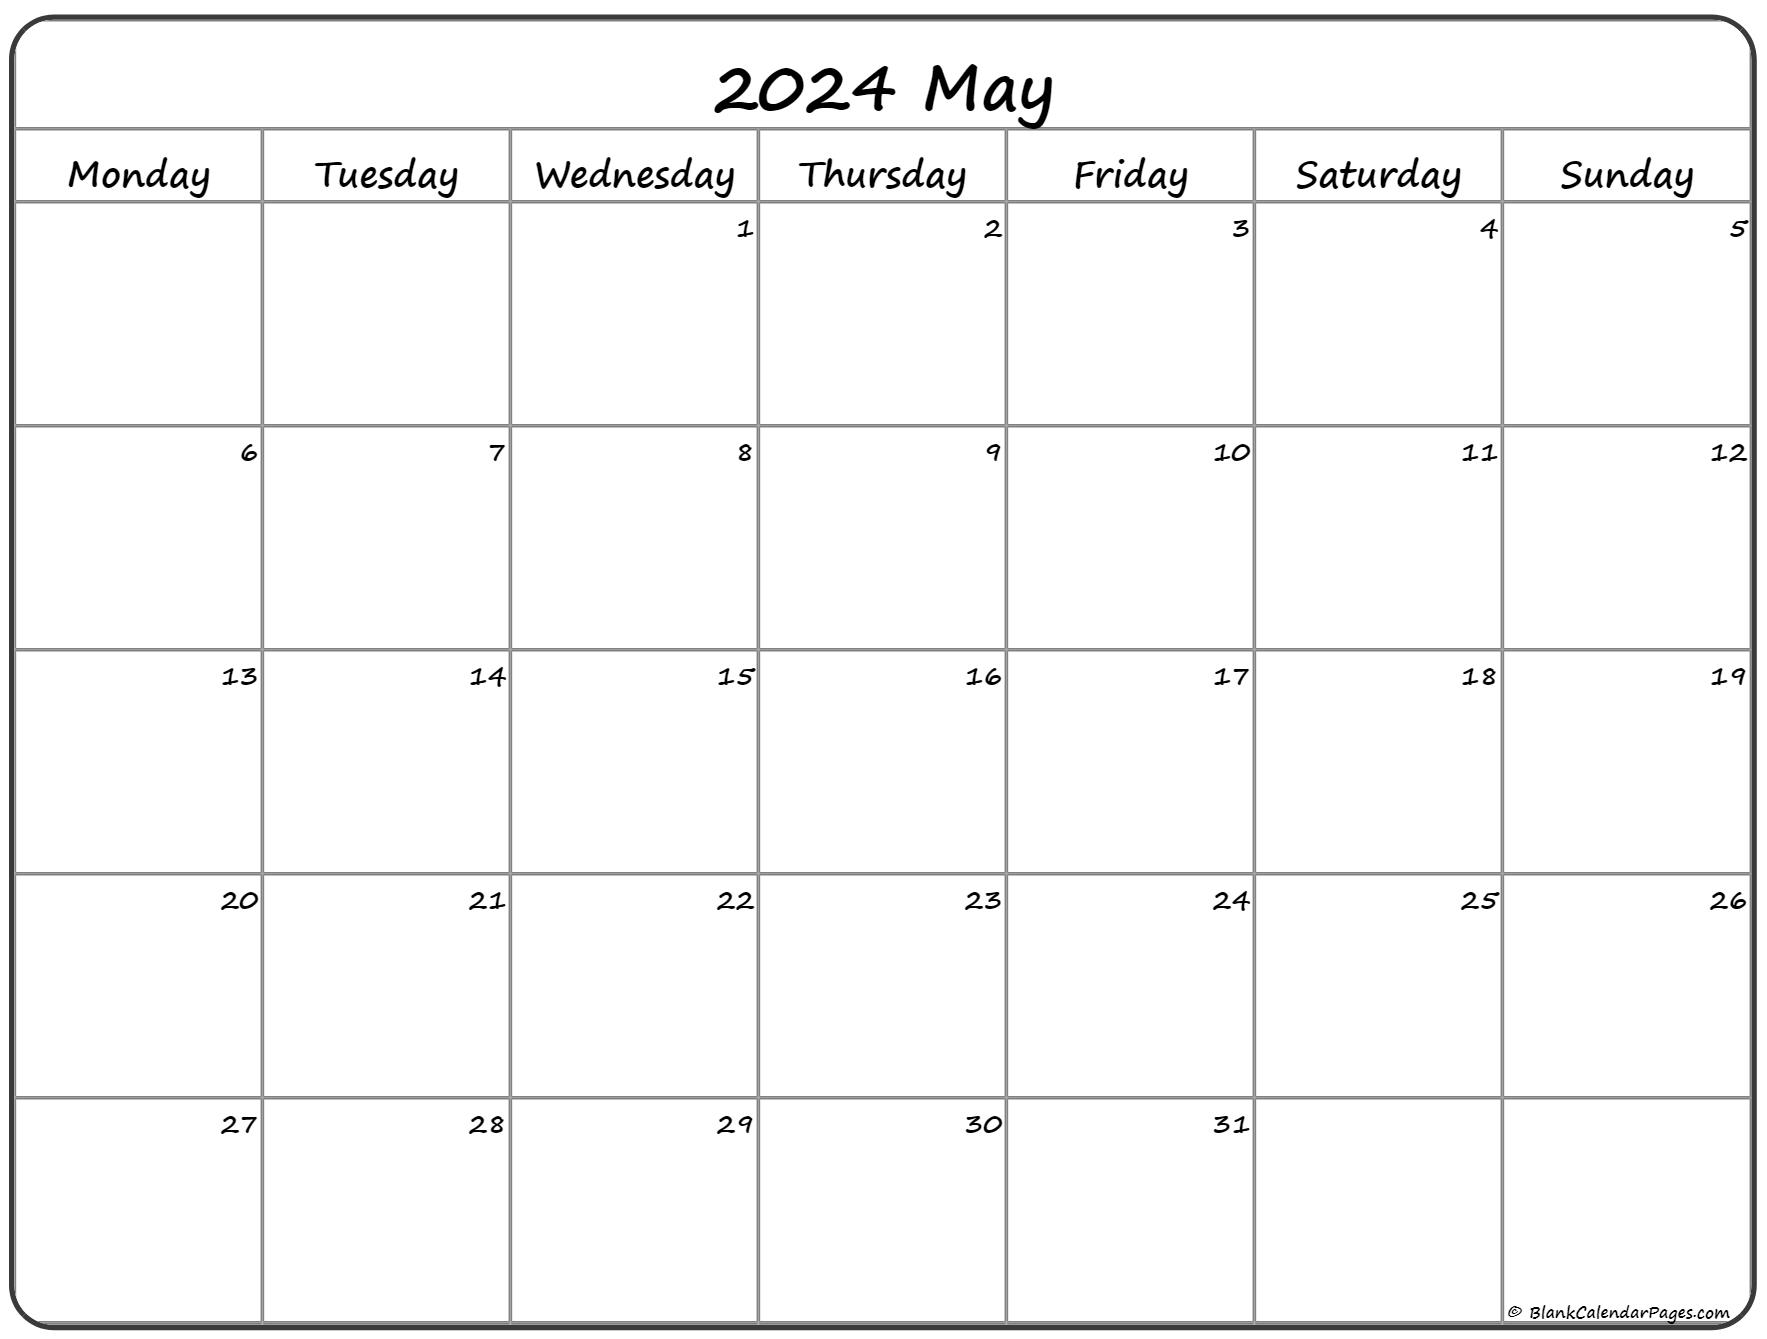 may-2023-calendar-monday-start-get-calendar-2023-update